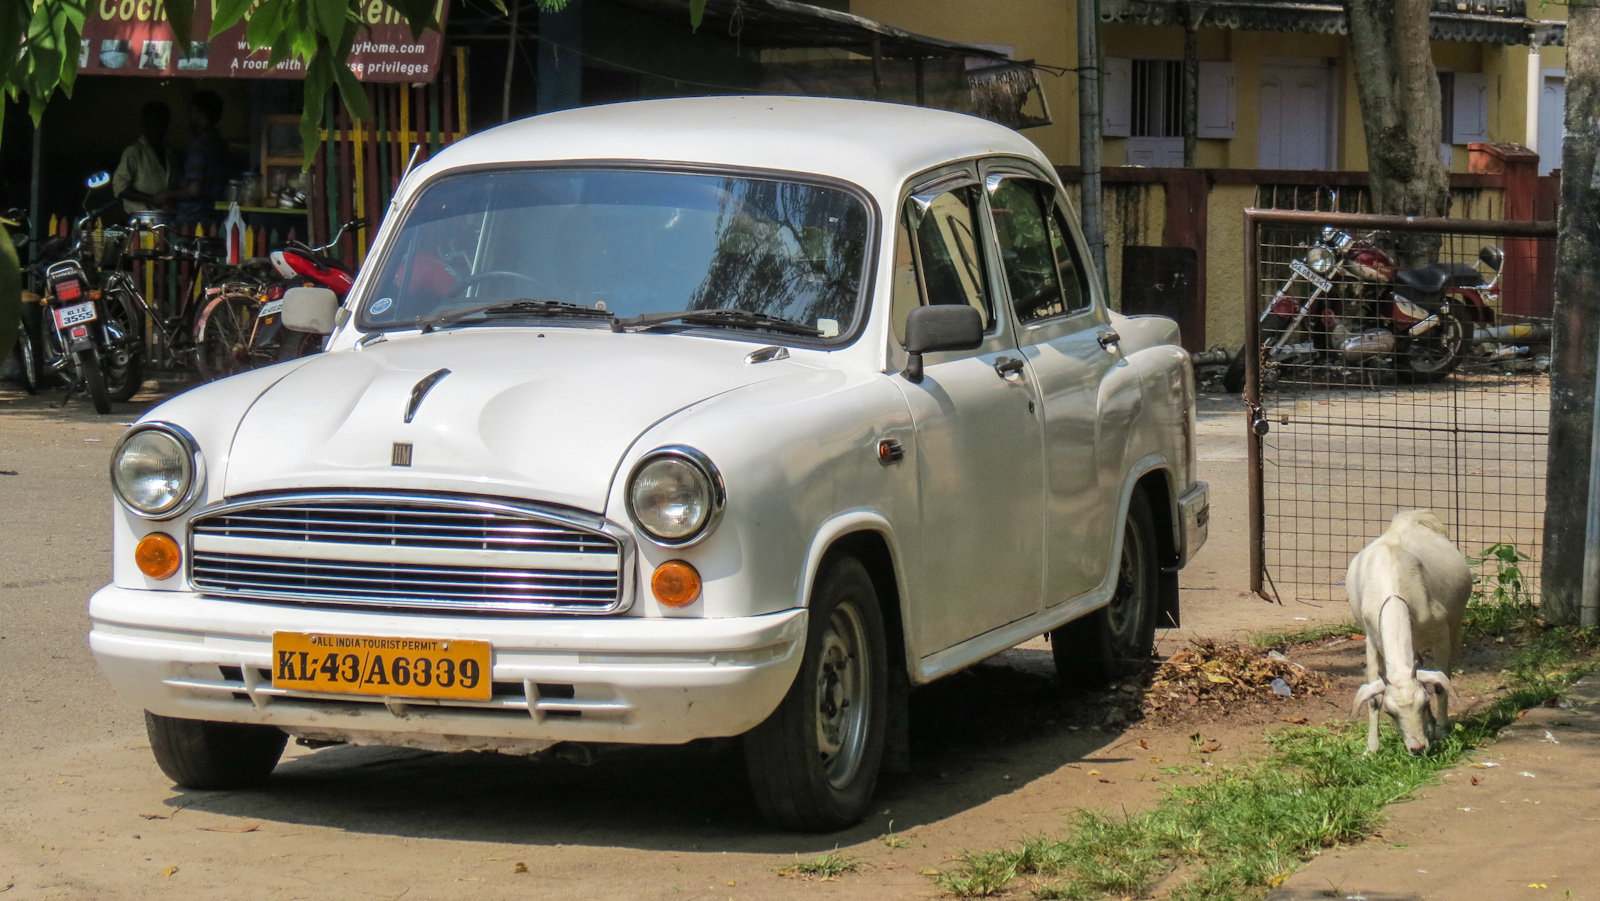 Авто из индии 4 буквы. Амбассадор машина. Амбассадор машина Индия. Индия автомобиль Амбассадор такси. Индийские такси Амбассадор.